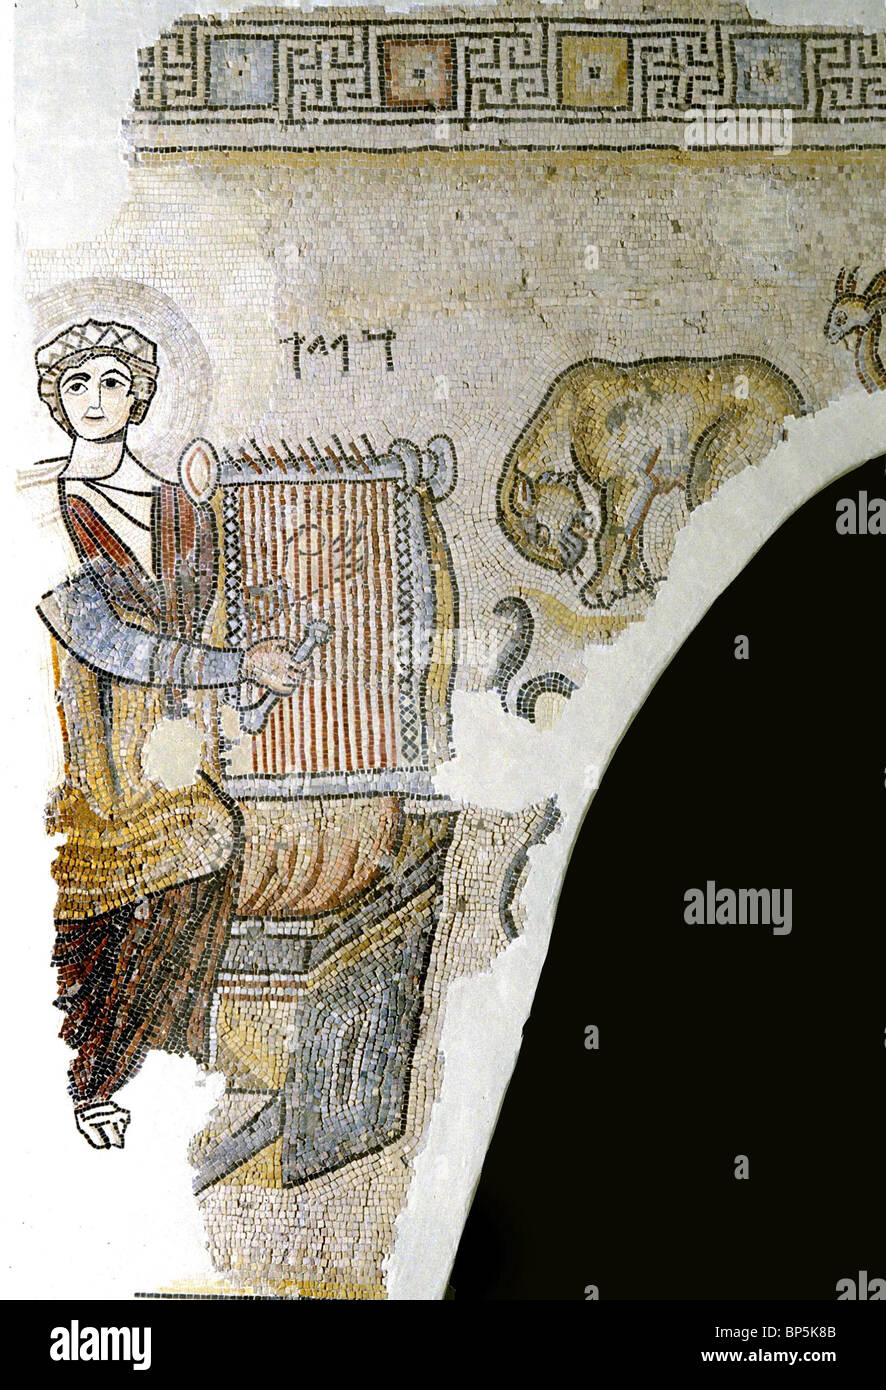 Sol de mosaïque À PARTIR DE LA 4ÈME. C. A.D. SYNAGOGUE À GAZA représentant le roi David jouant de la lyre. Lettres HÉBRAÏQUES AU-DESSUS DE LA LYRE Lire : Banque D'Images